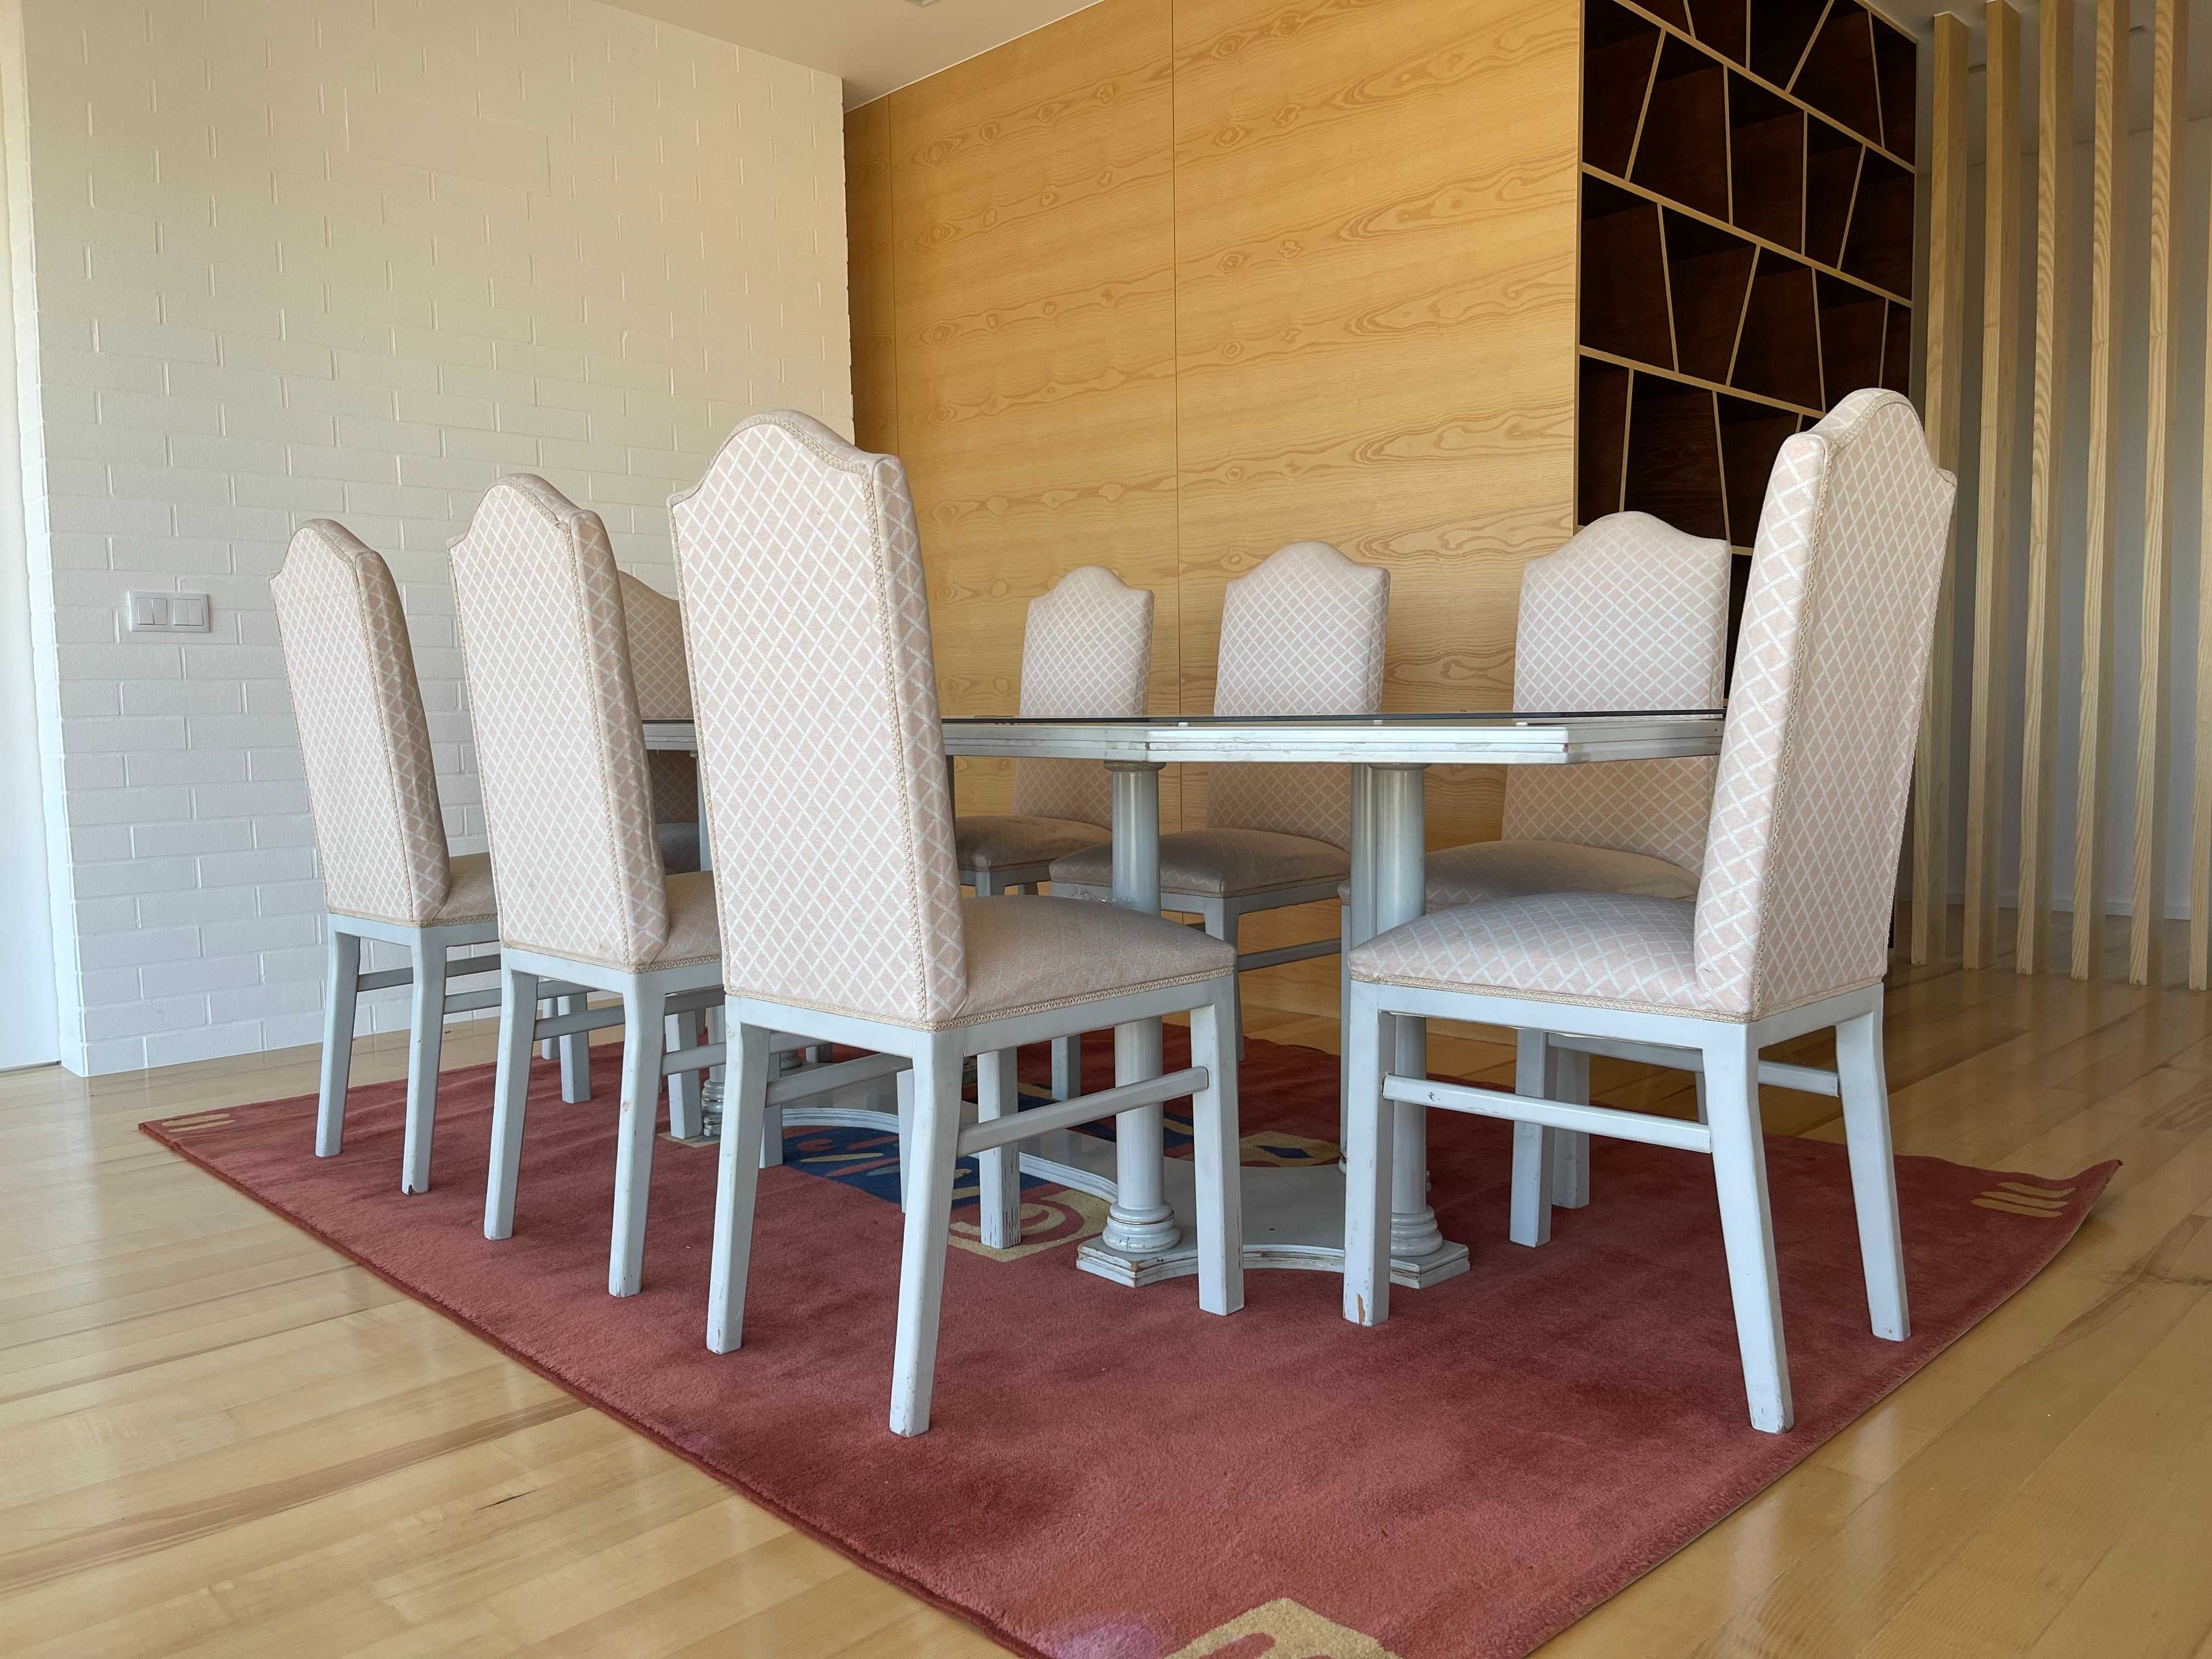 Conjunto mesa de jantar grande e 8 cadeiras tecidas